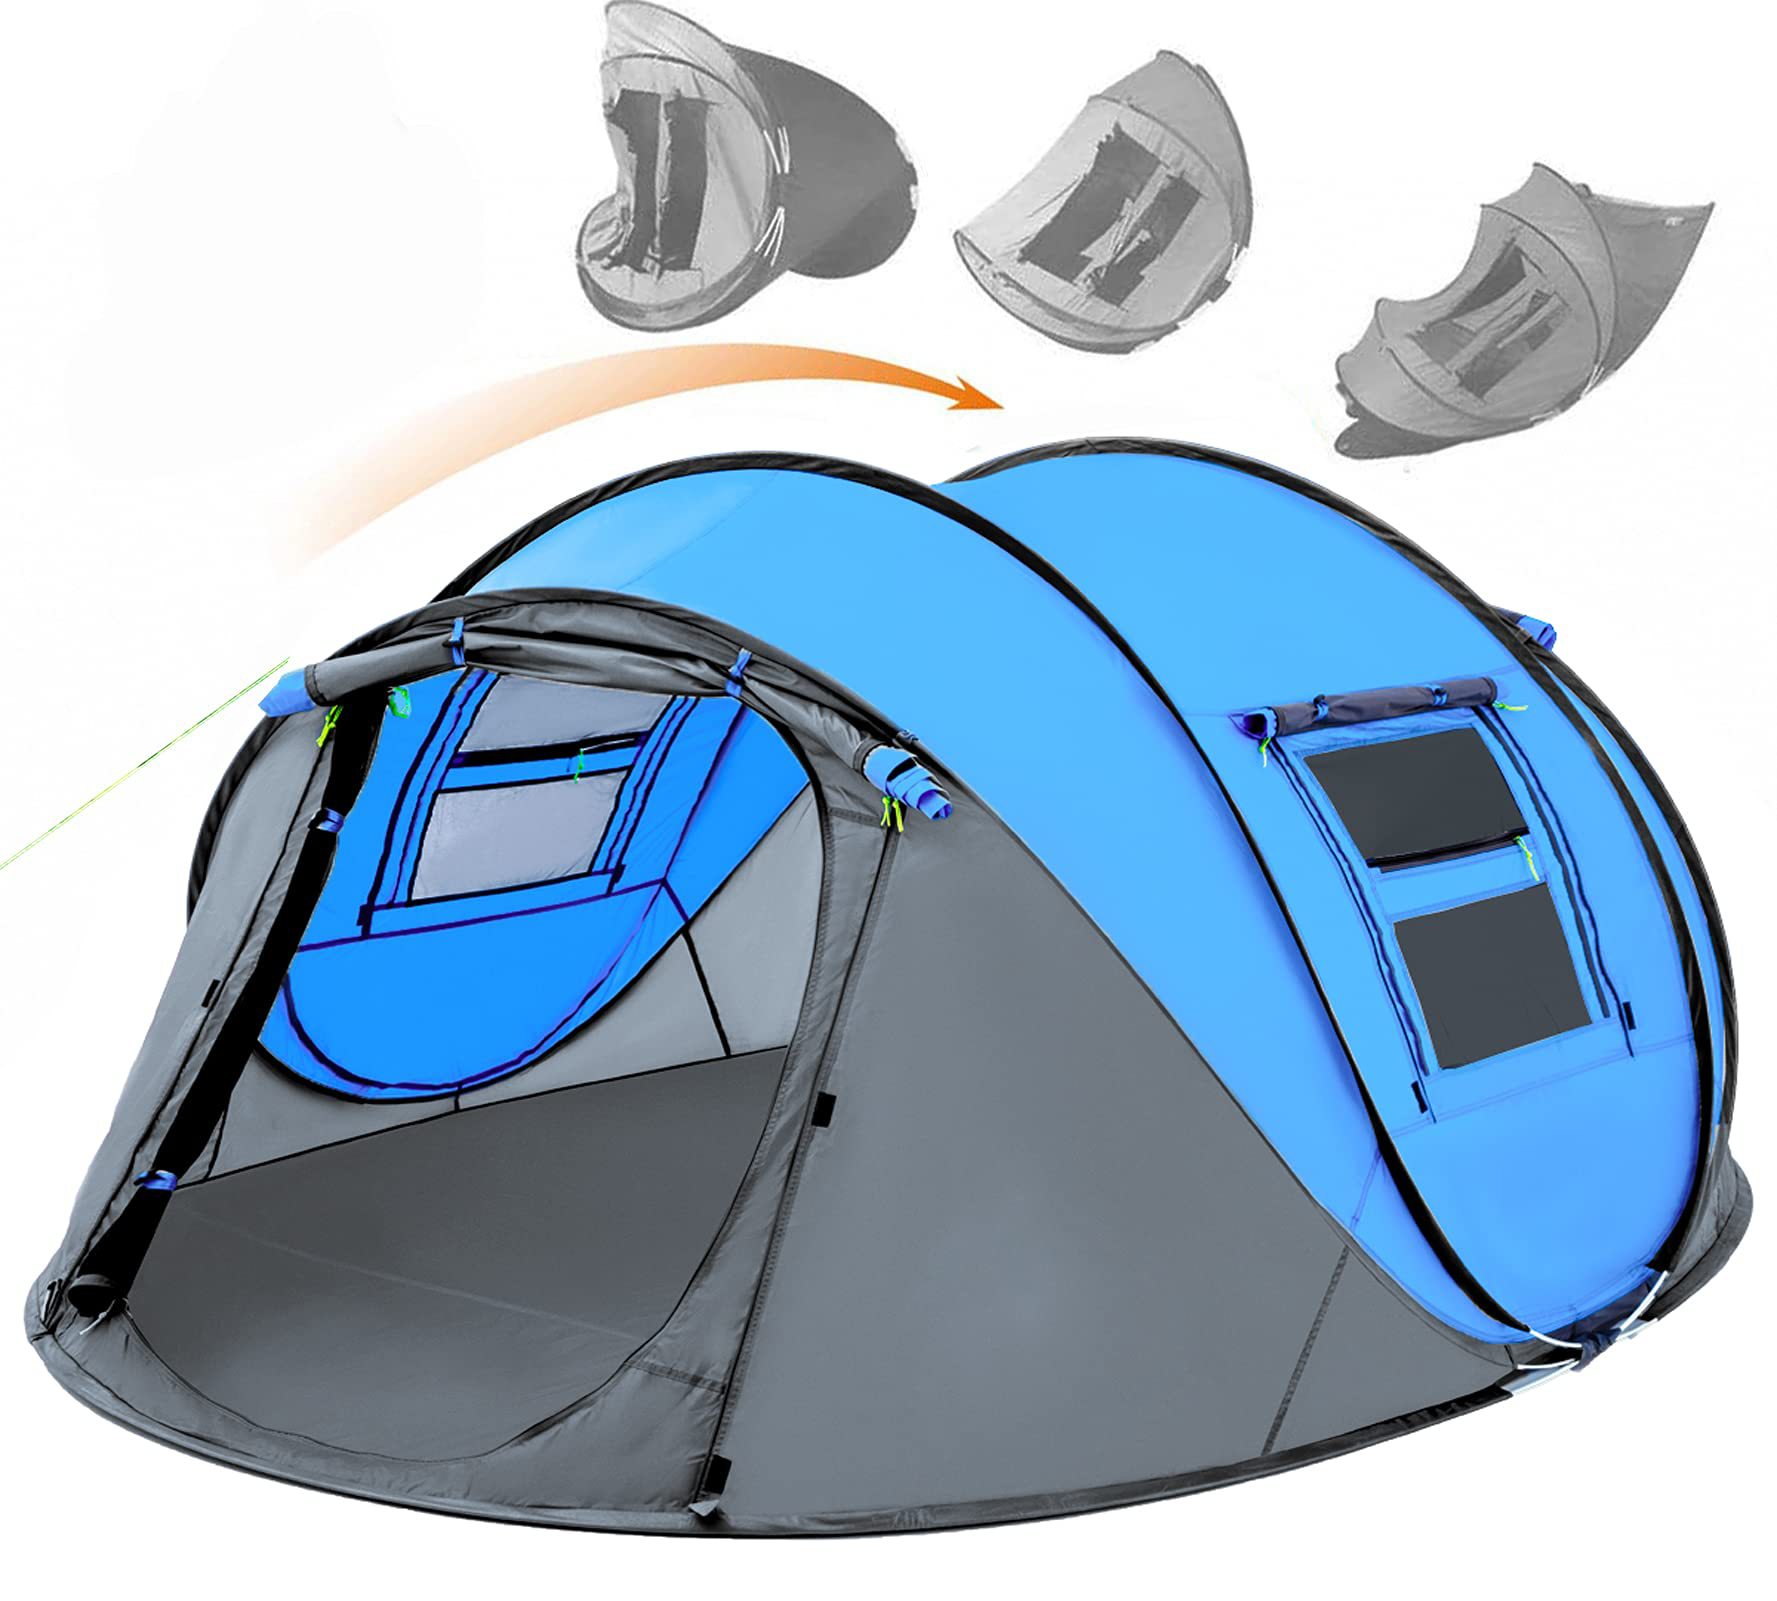 4人用 簡単ポップアップテント 防水 自動セットアップ 2ドア - インスタントファミリーテント キャンプ ハイキング & 旅行用